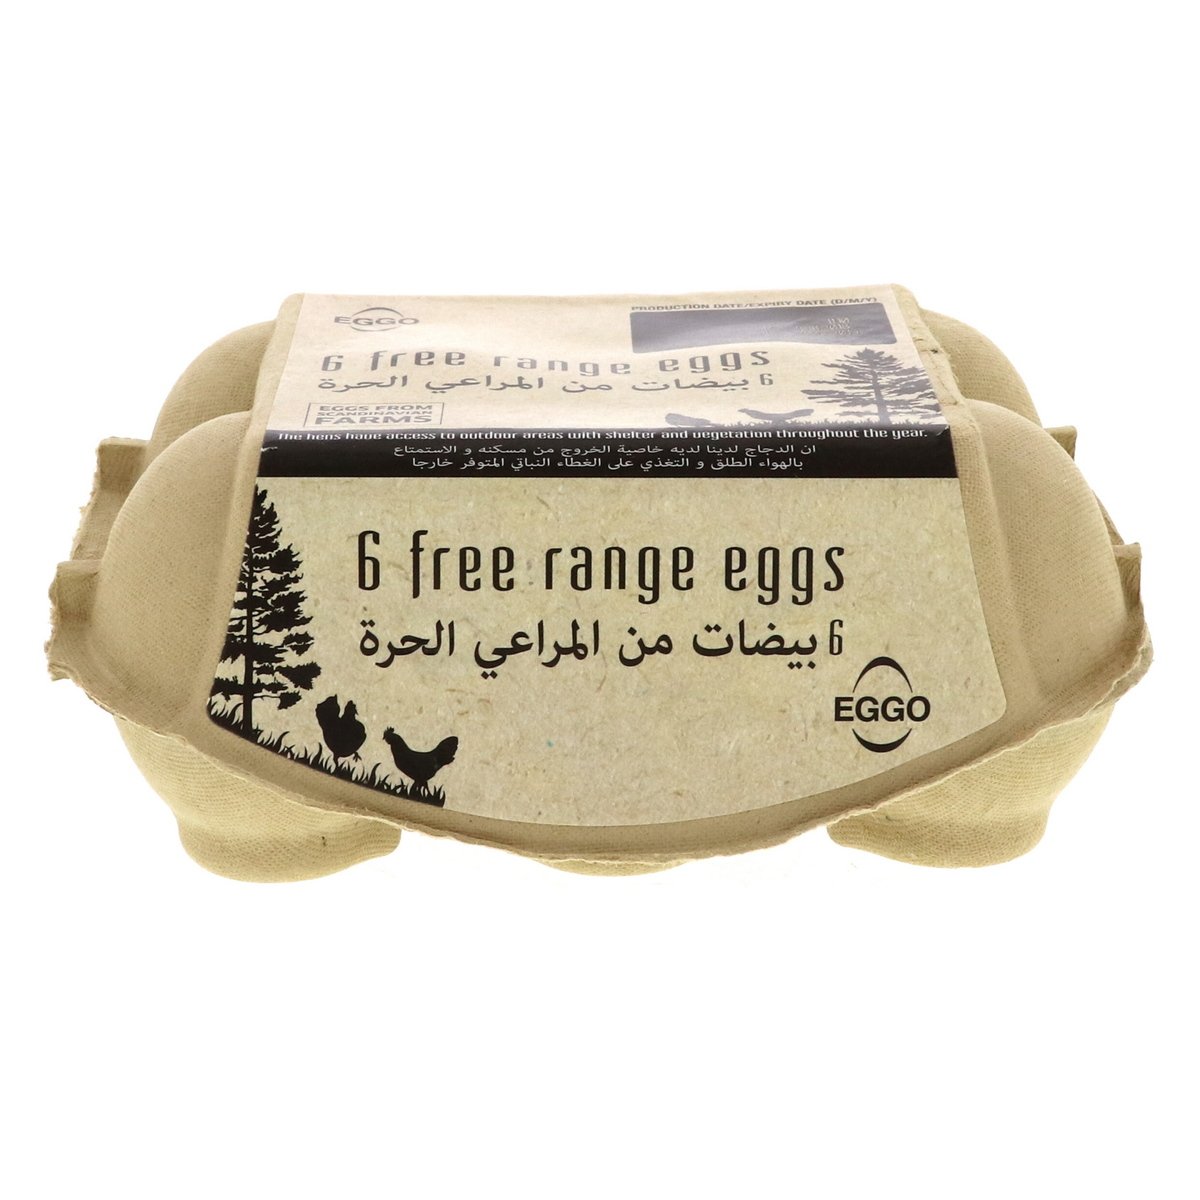 Eggo Free Range Eggs 6 pcs